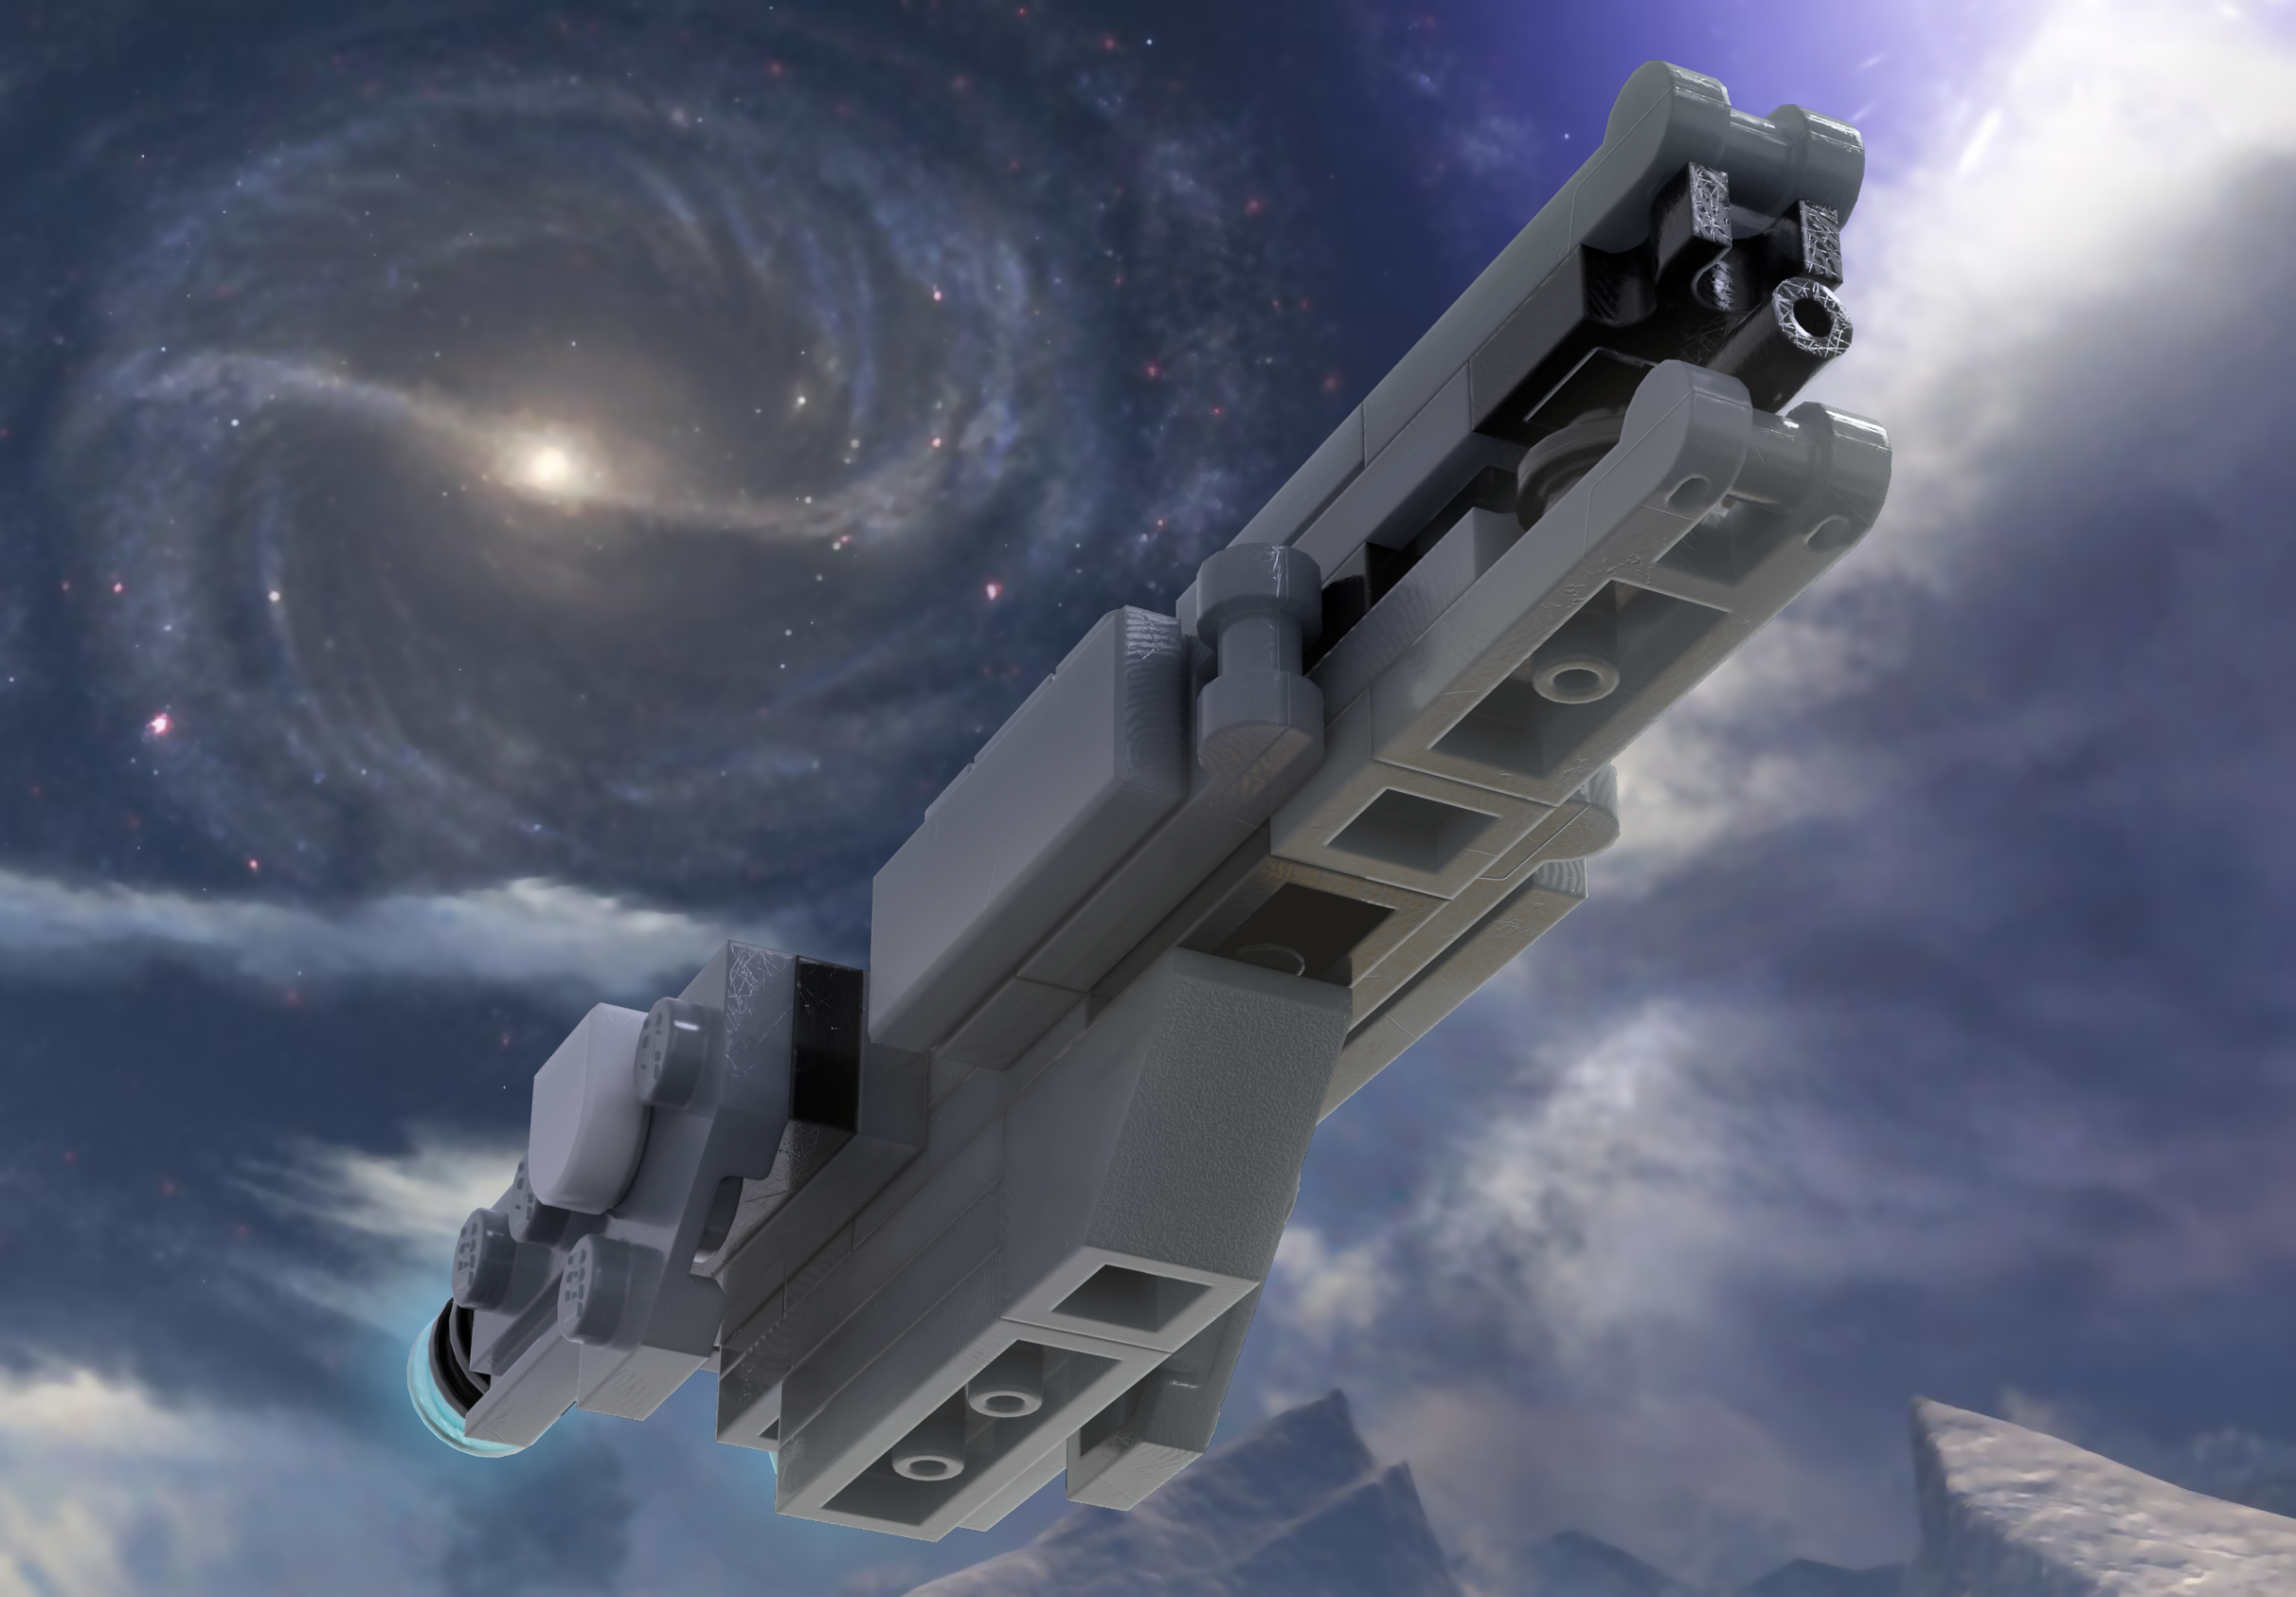 UNSC Support Ships #1  Lego spaceship, Lego halo, Lego ship